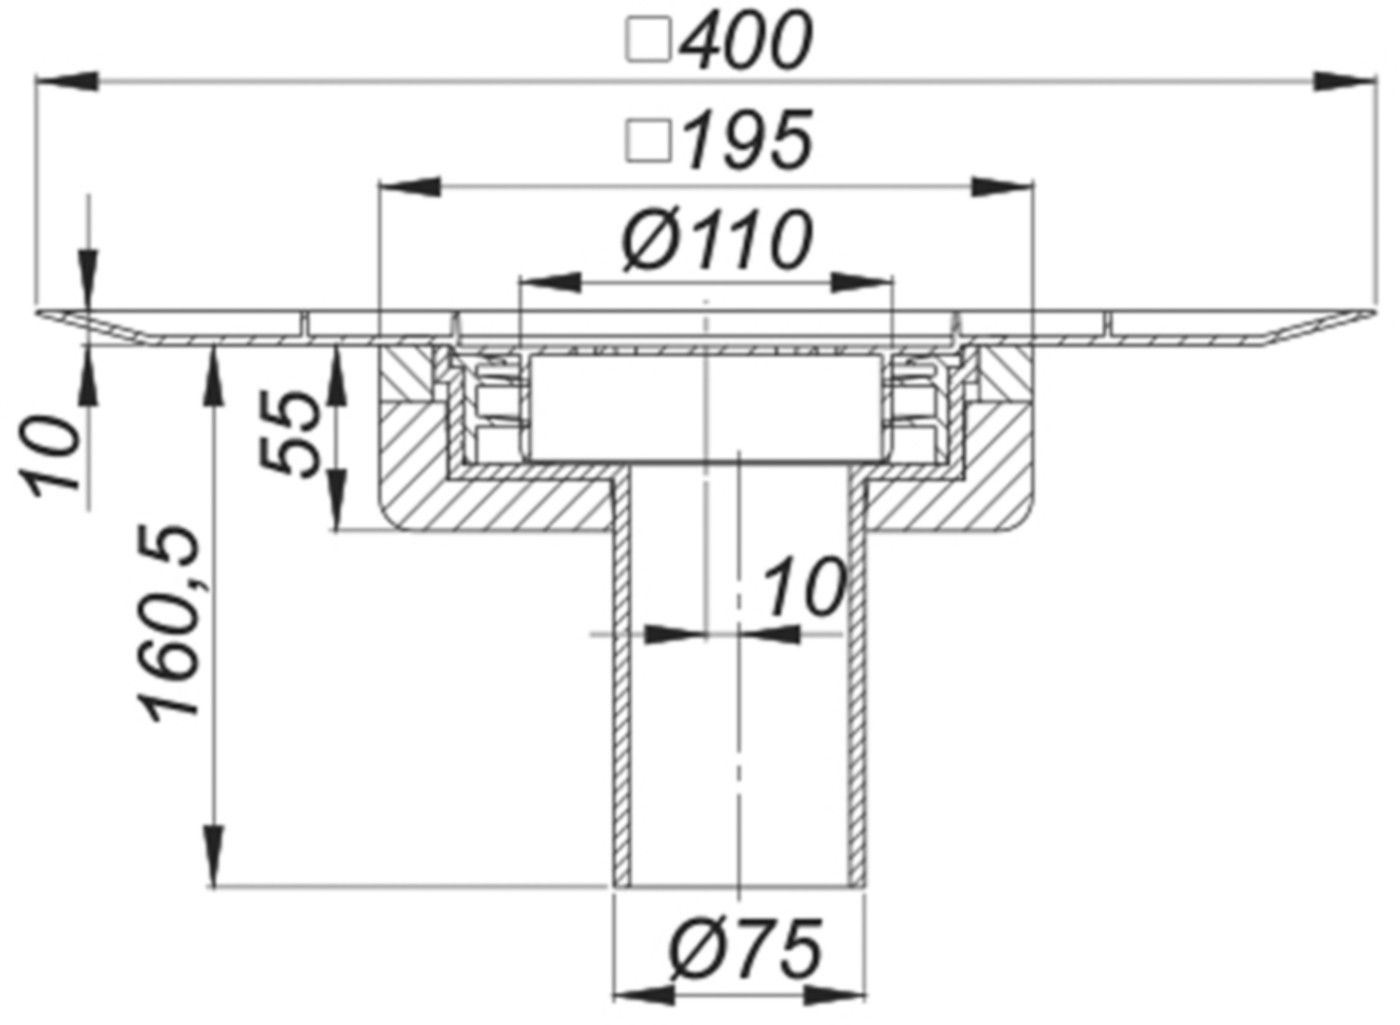 Balkonablauf SwissUnico senkrecht 75mm 3-830173 - SCHACO Entwässerungstechnik